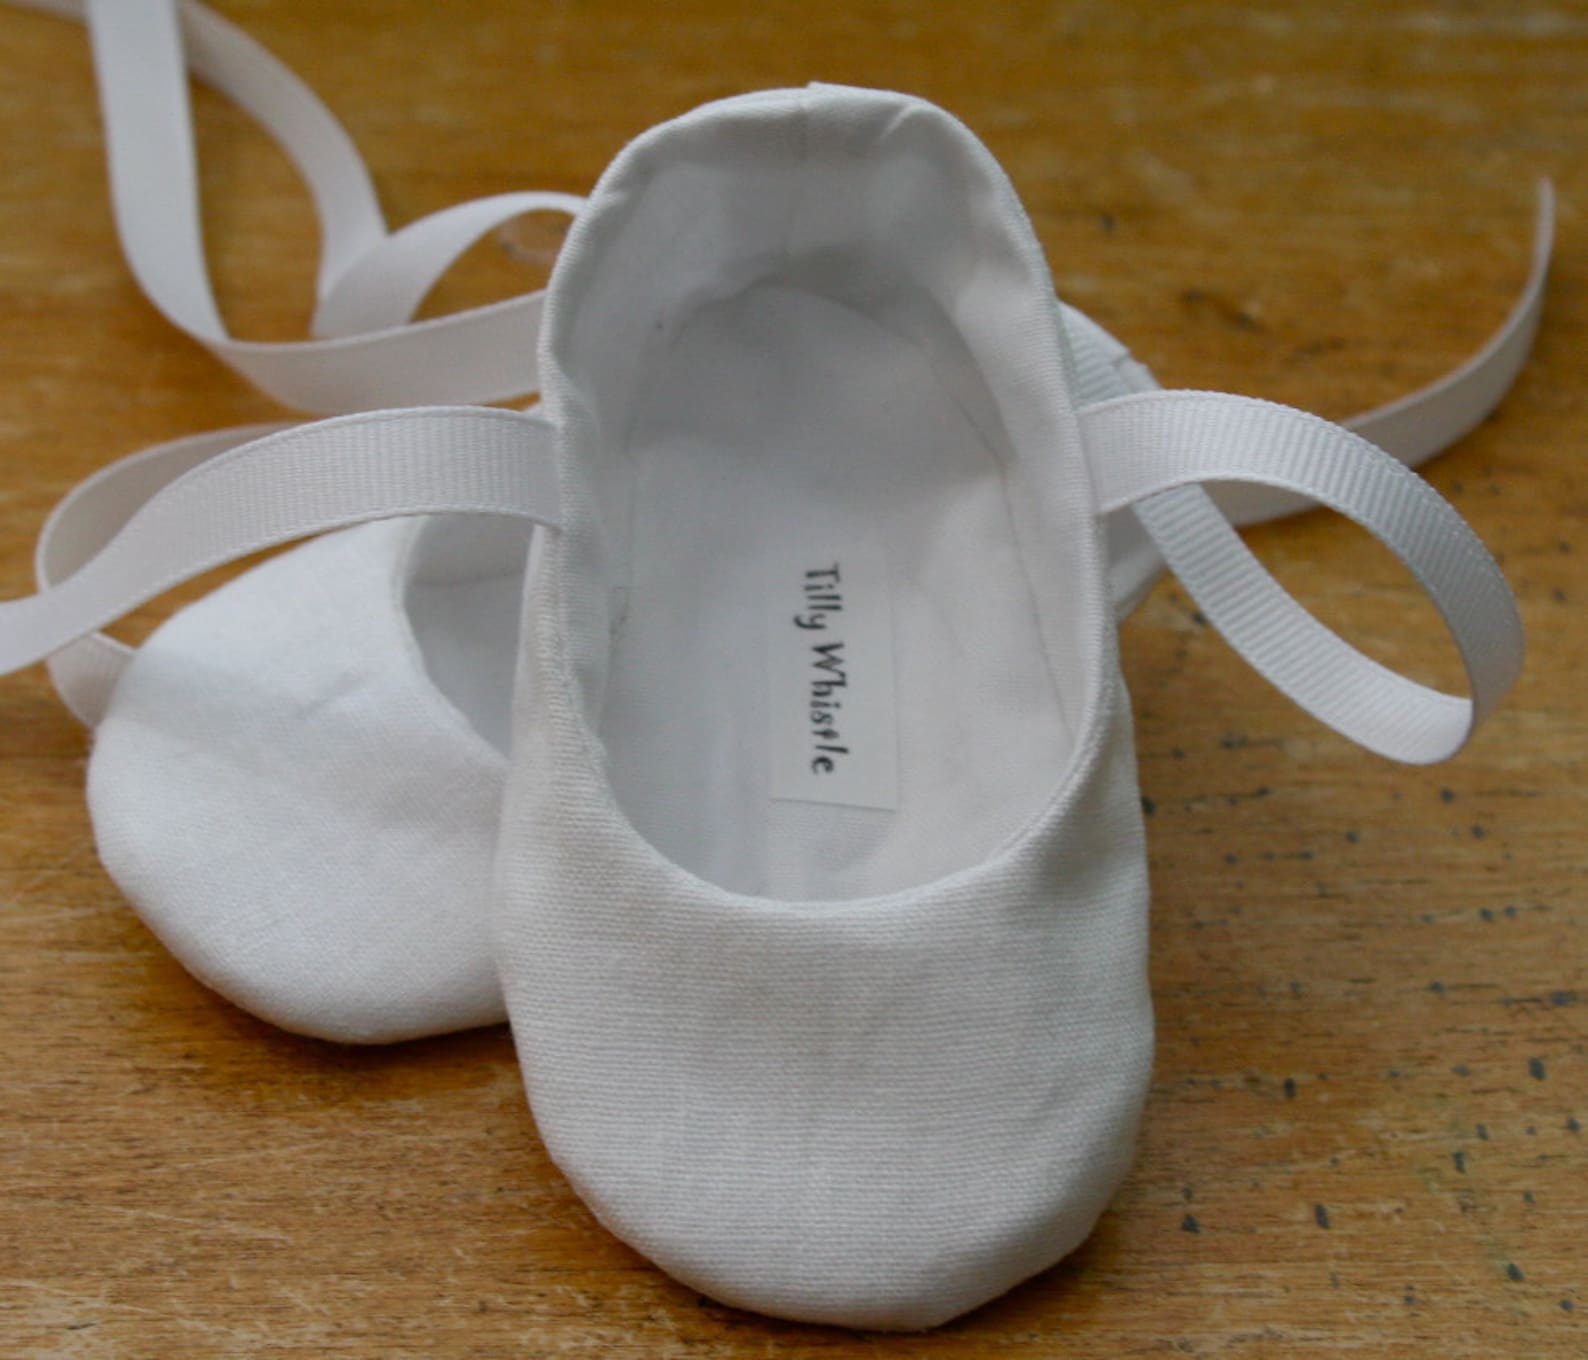 white flower girl shoes